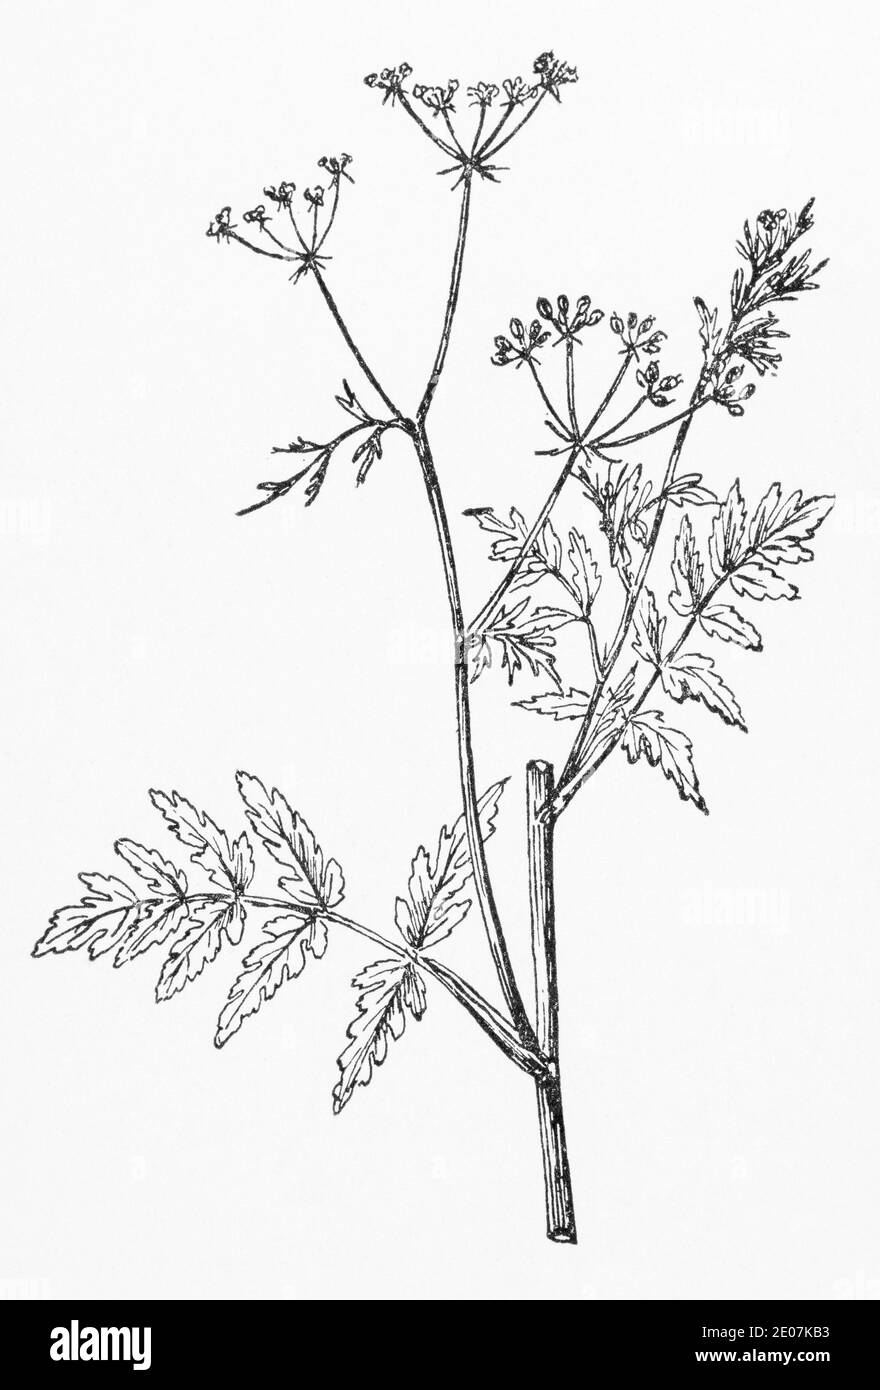 Alte botanische Illustration Gravur von Steinsilie / Sison amomum. Zeichnungen von britischen Umbelliferen. Traditionelle Heilkräuter Pflanze. Siehe Hinweise Stockfoto